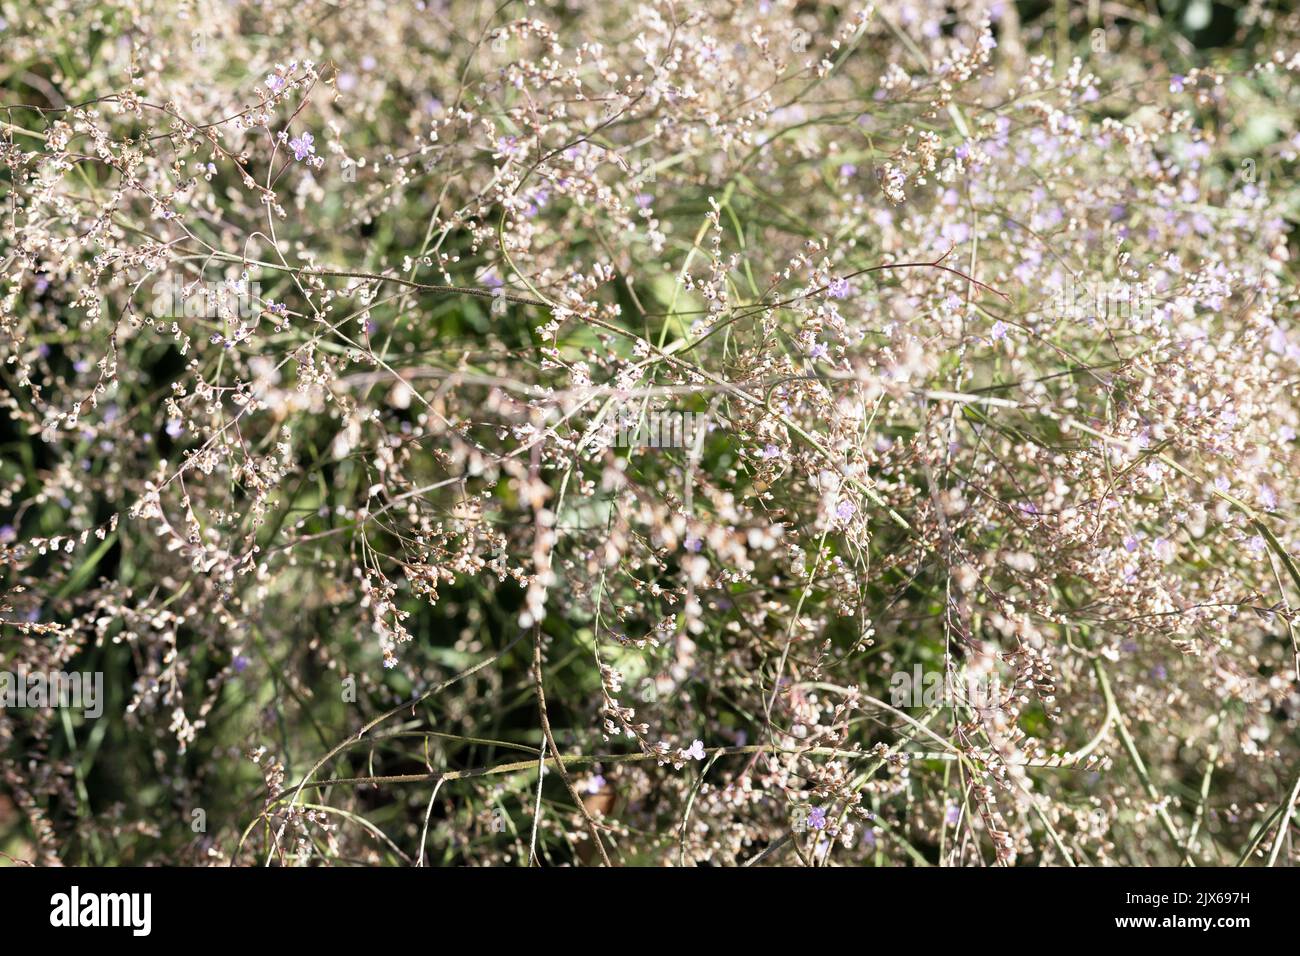 Limonium latifolium - sea lavender. Stock Photo